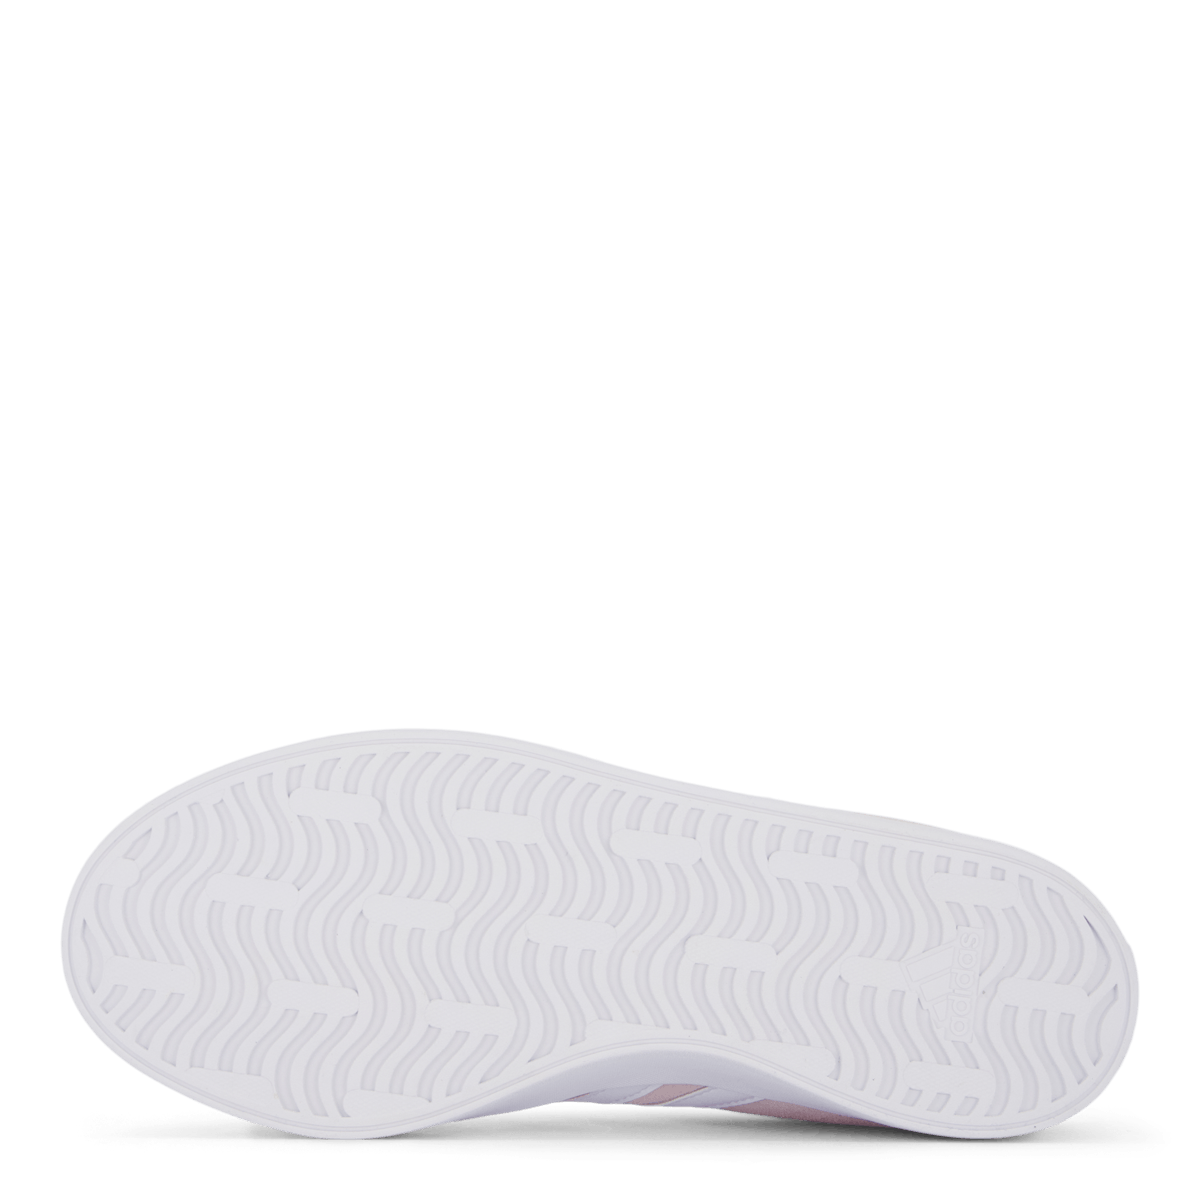 VL Court 3.0 Shoes Almpnk / Cloud White / Almpnk